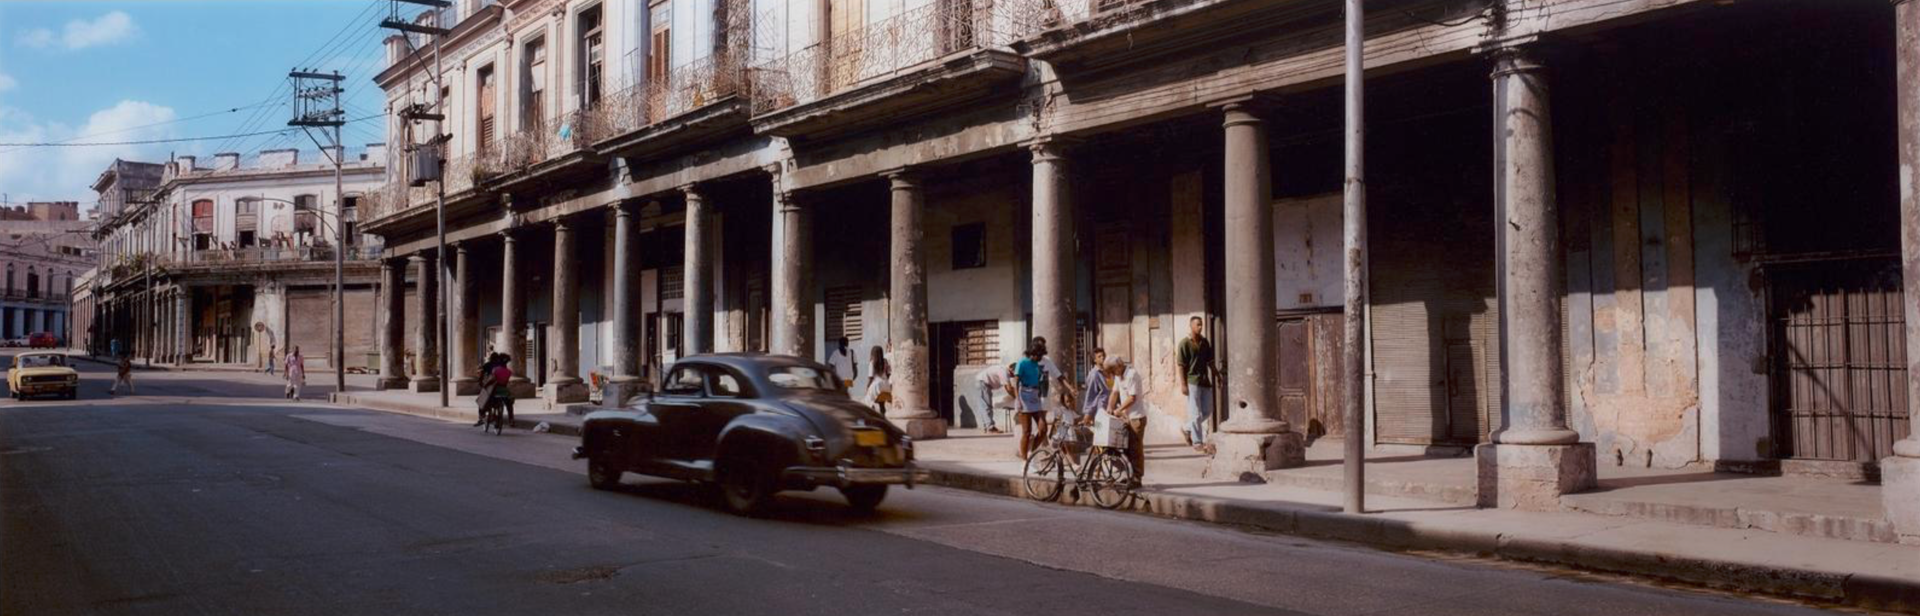 The Black Car, Havana by Wim Wenders